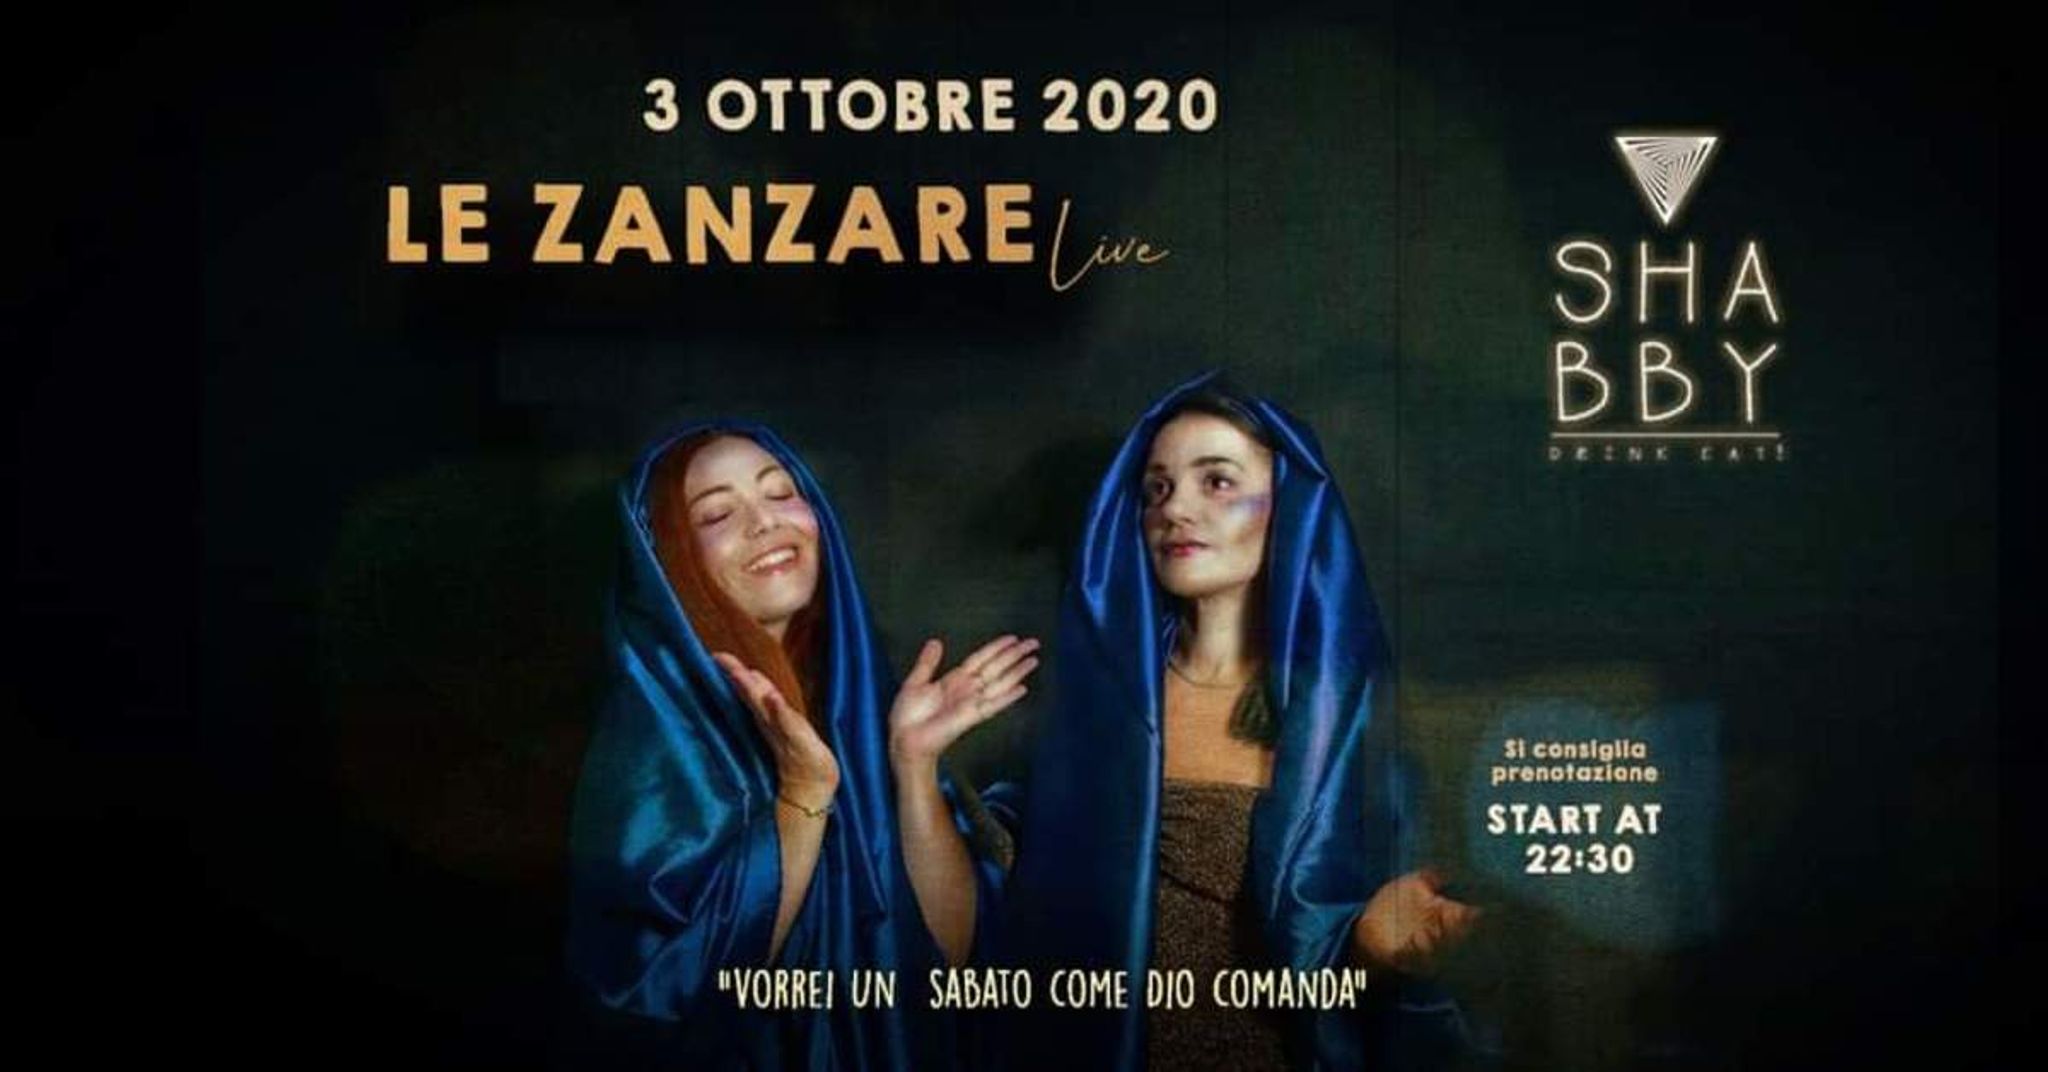 LE ZANZARE -live-